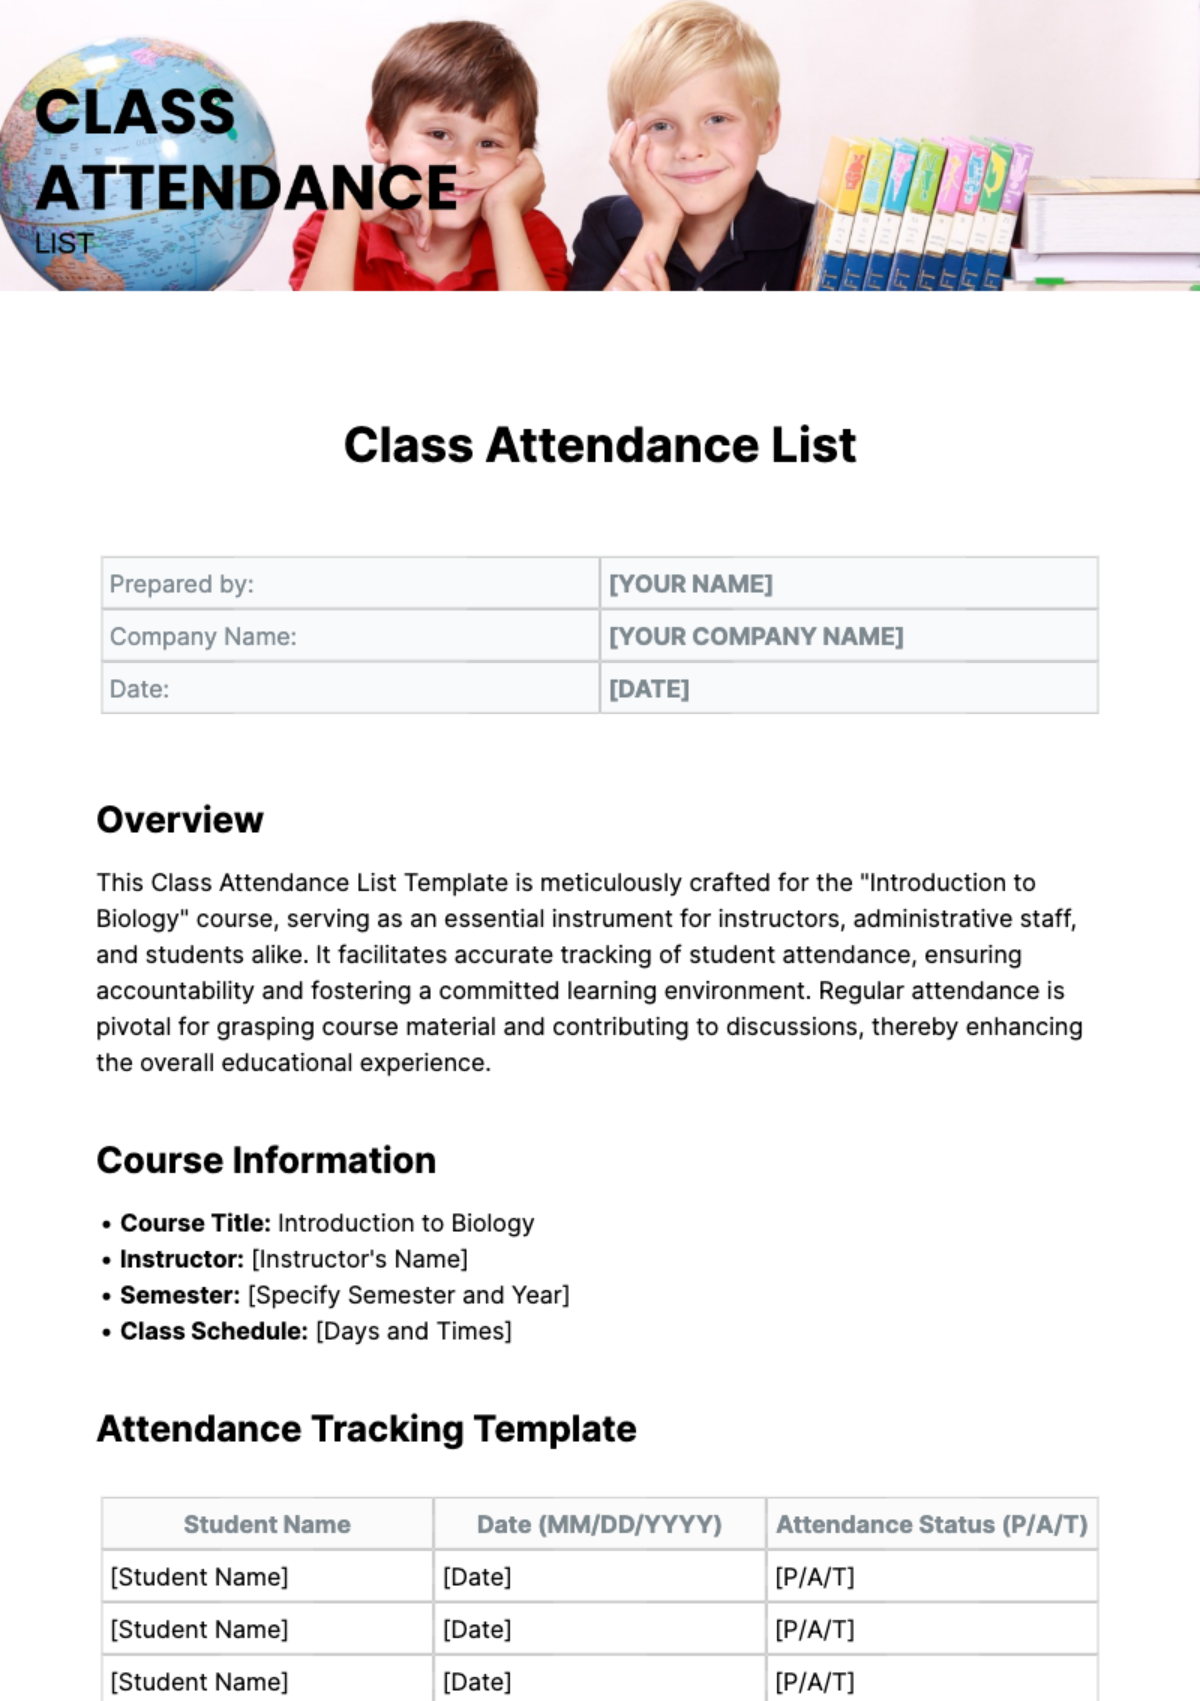 Class Attendance List Template